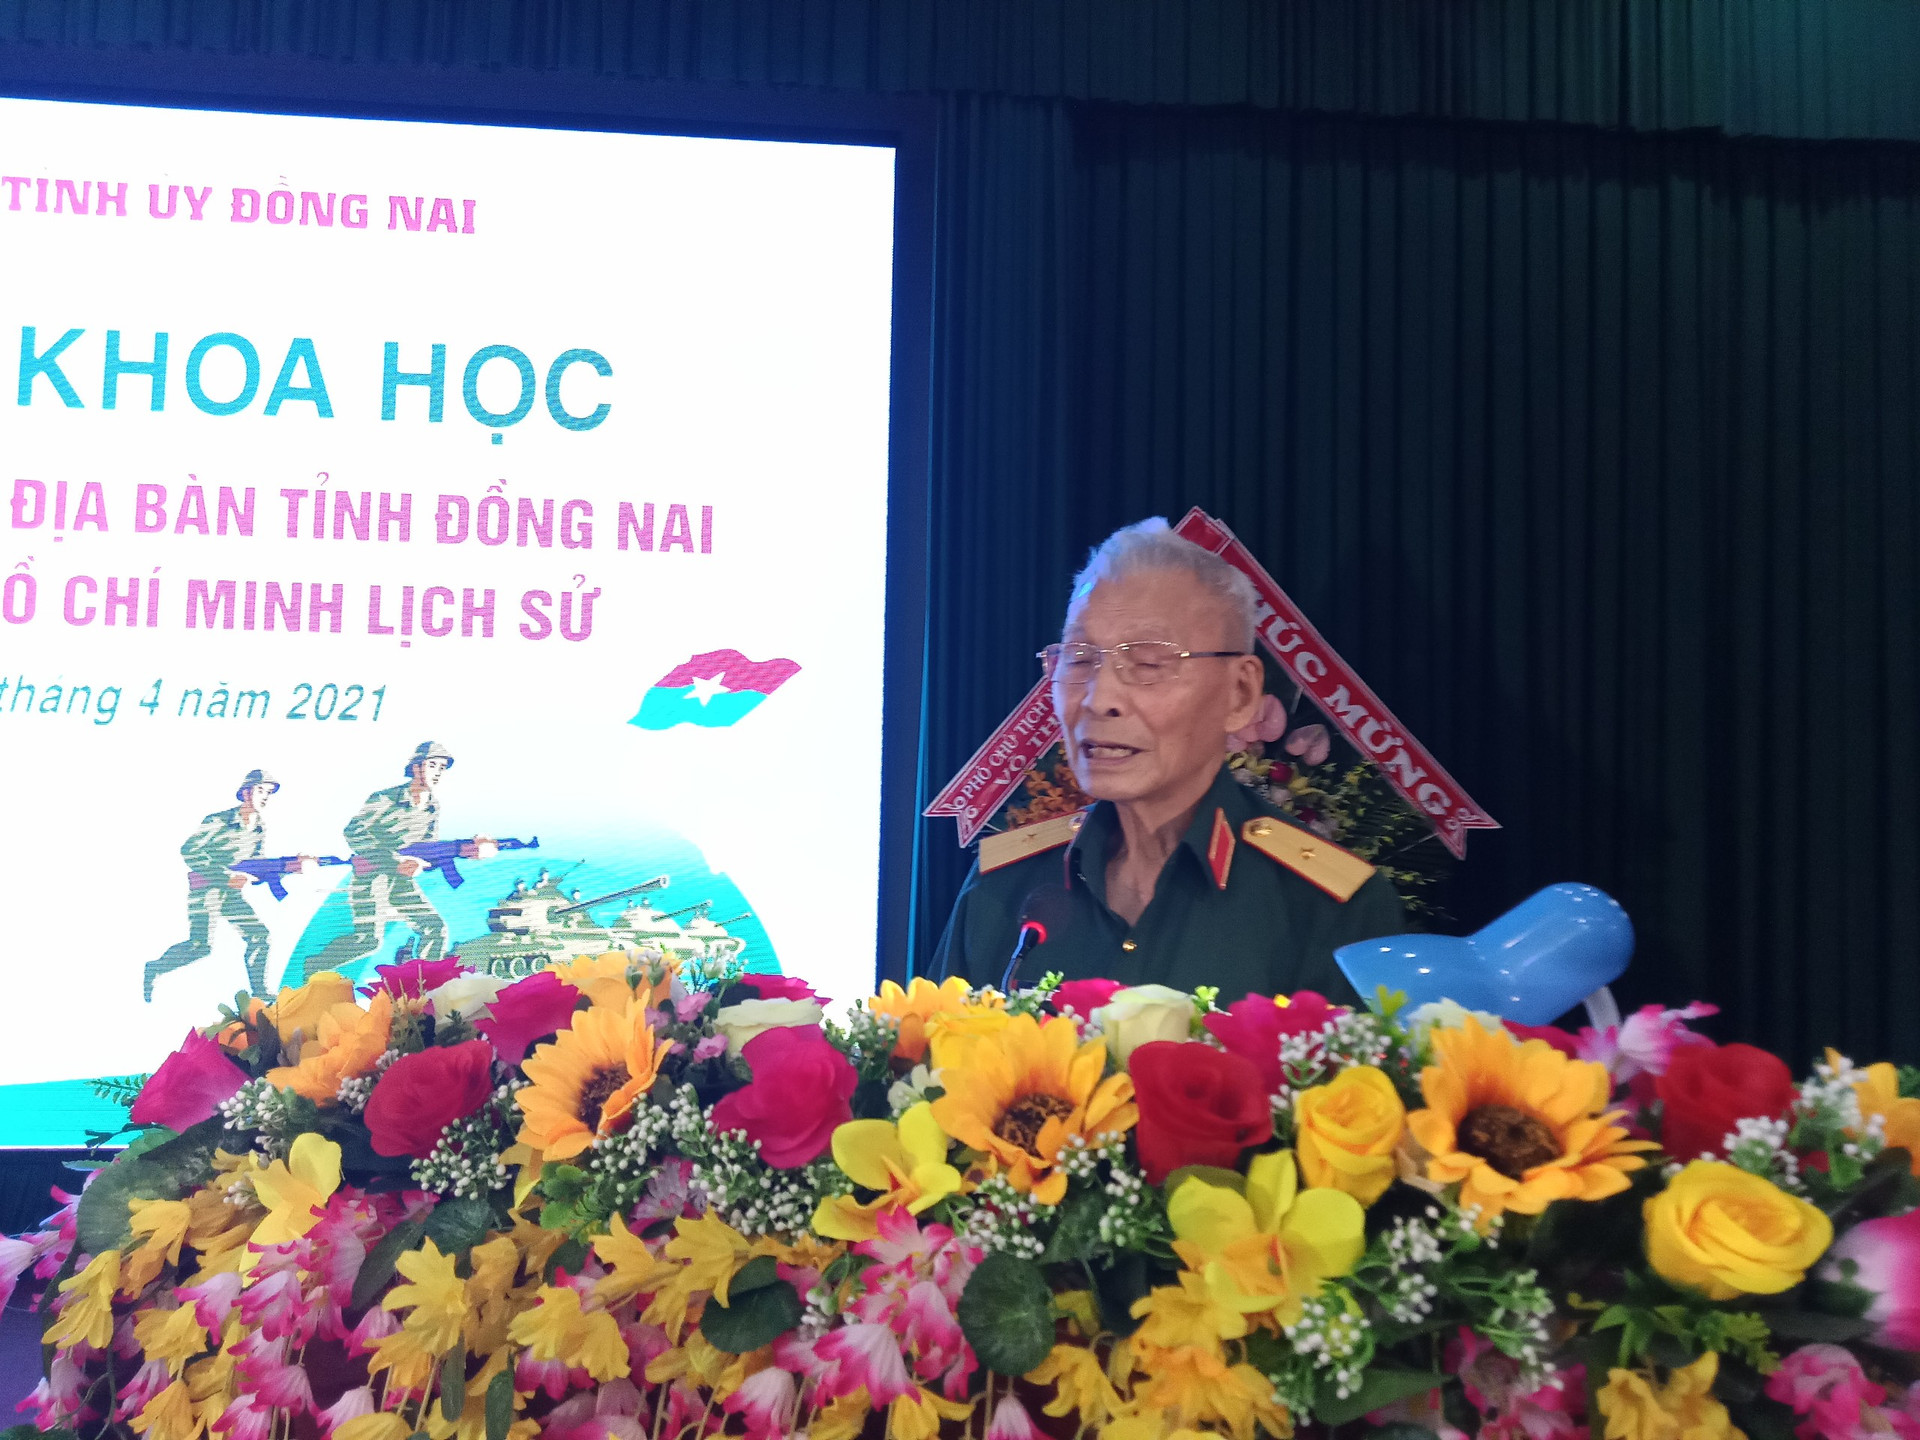 Thiếu tướng Nguyễn Đức Huy (năm nay 91 tuổi), Nguyên Phó Tư lệnh Sư đoàn 325 , Quân đoàn 2 trong Chiến dịch Hồ Chí Minh, Nguyên Quyền Tư lệnh Quân khu 2 tham luận tại hội nghị.